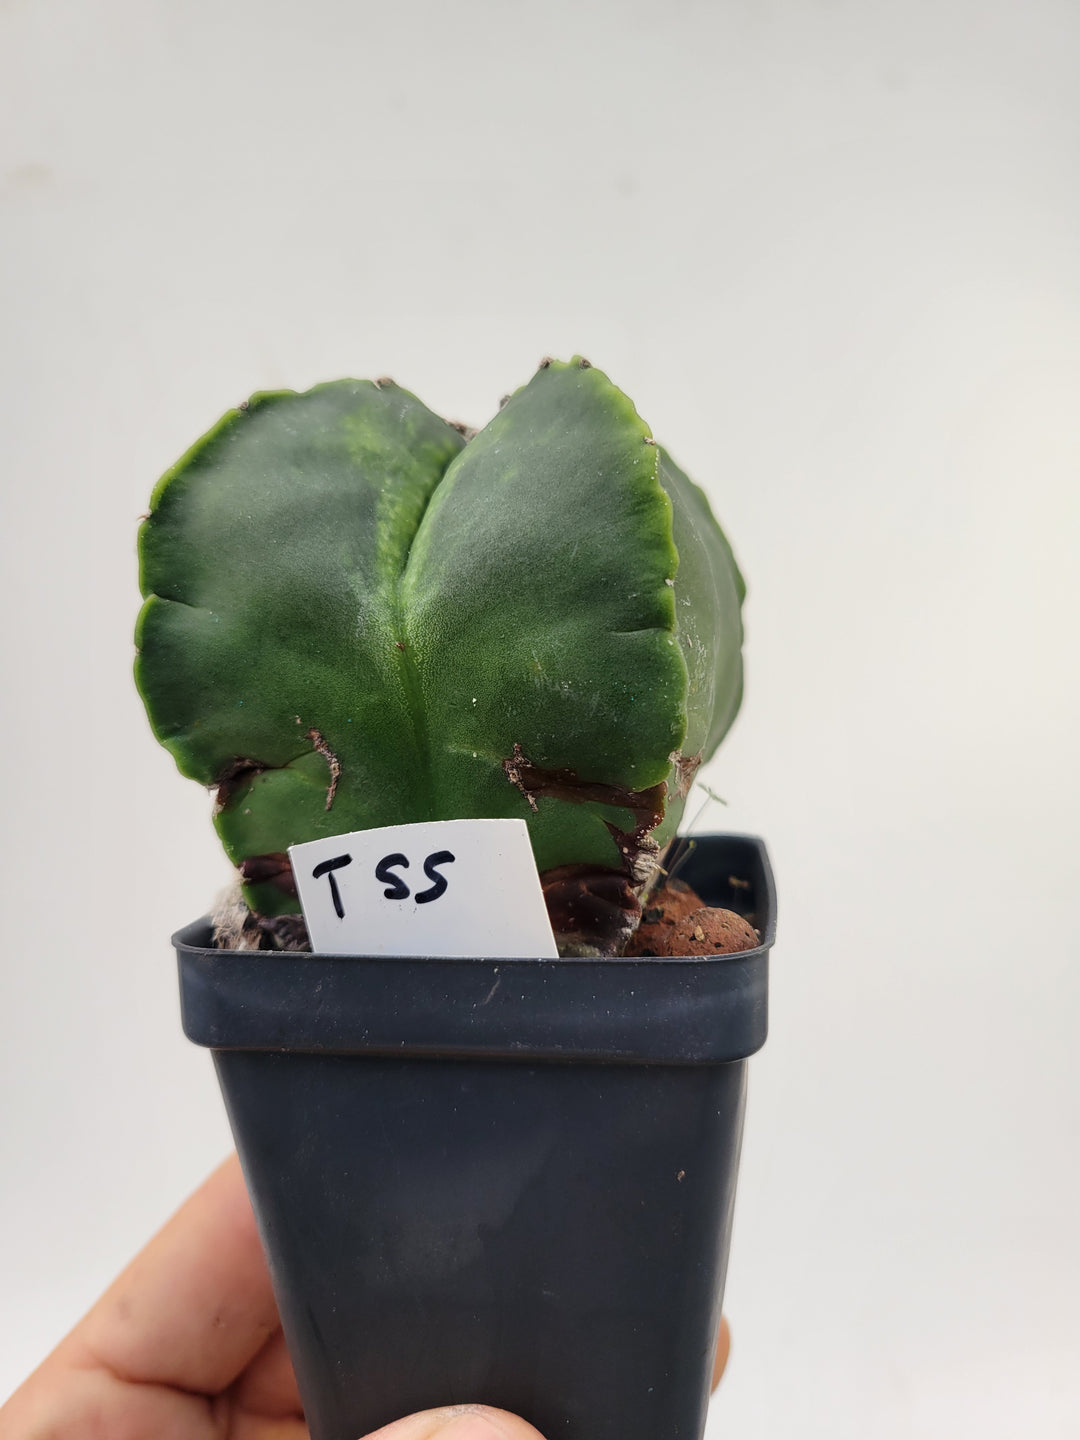 Astrophytum Myriostigma cv "kikko" hybrid . 2.5" pot, very established, Specimen size XL #T55 - Nice Plants Good Pots